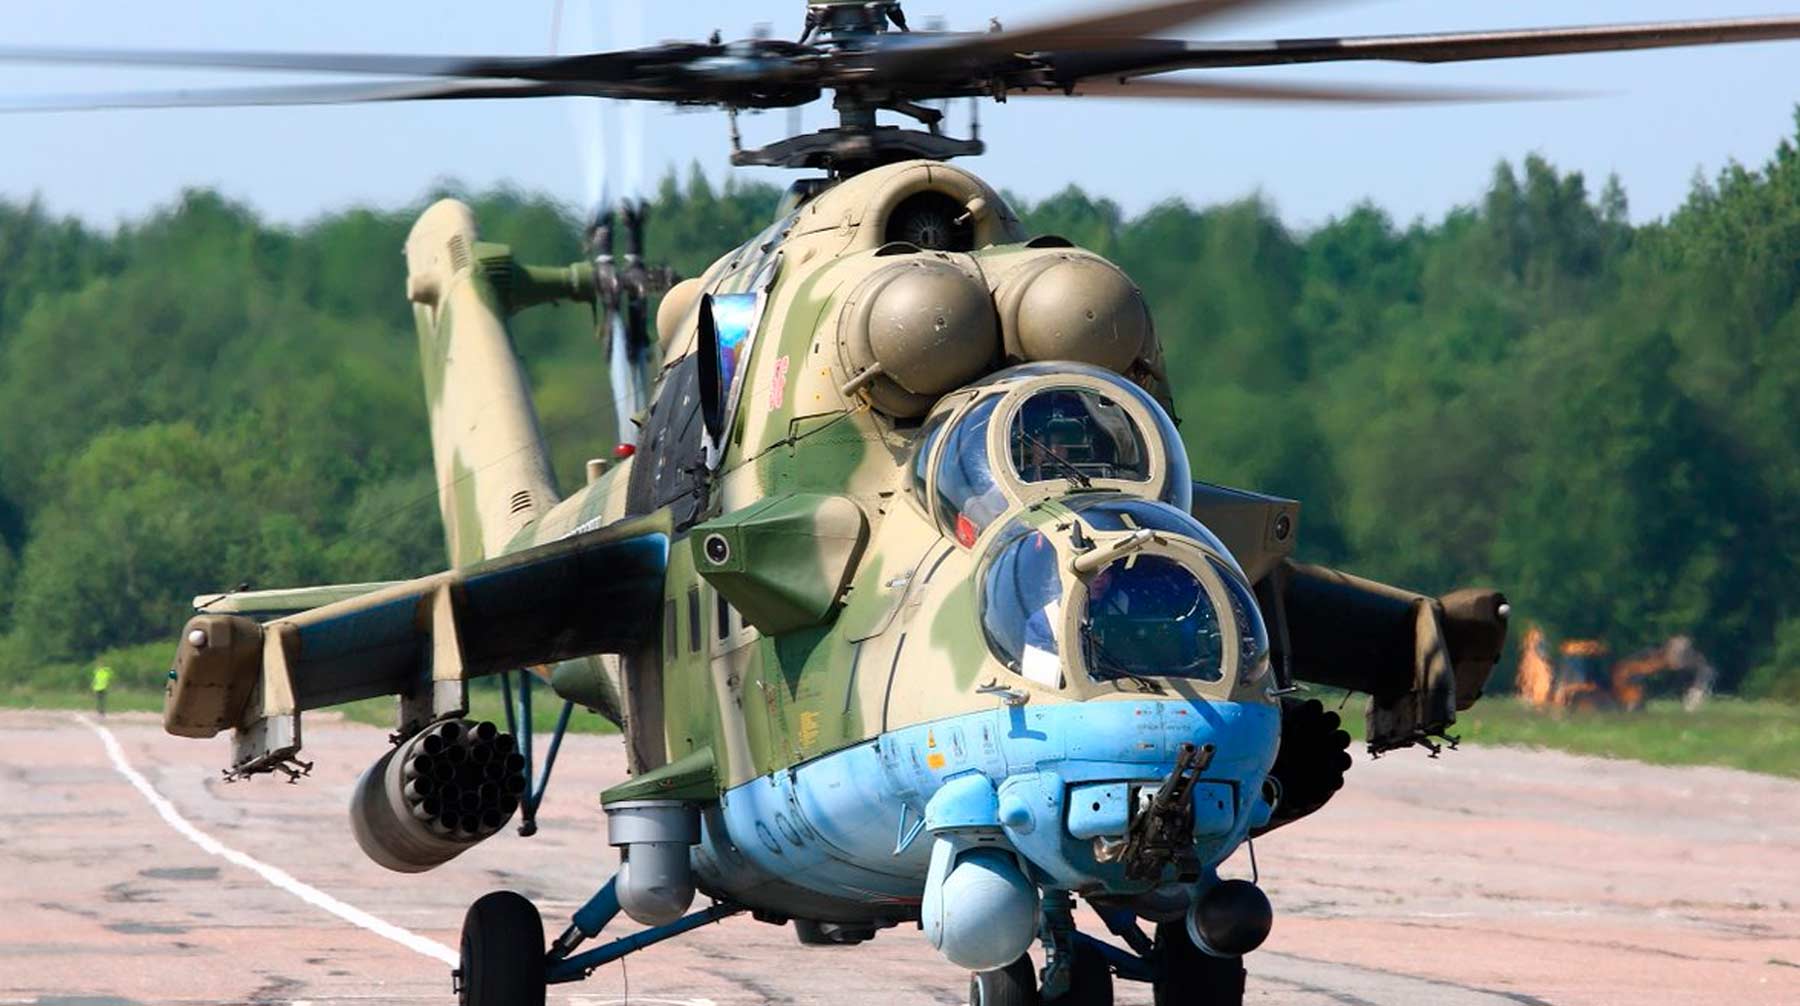 Российский военный вертолет был сбит над территорией Армении азербайджанскими вооруженными силами 9 ноября Фото: © Министерство обороны РФ